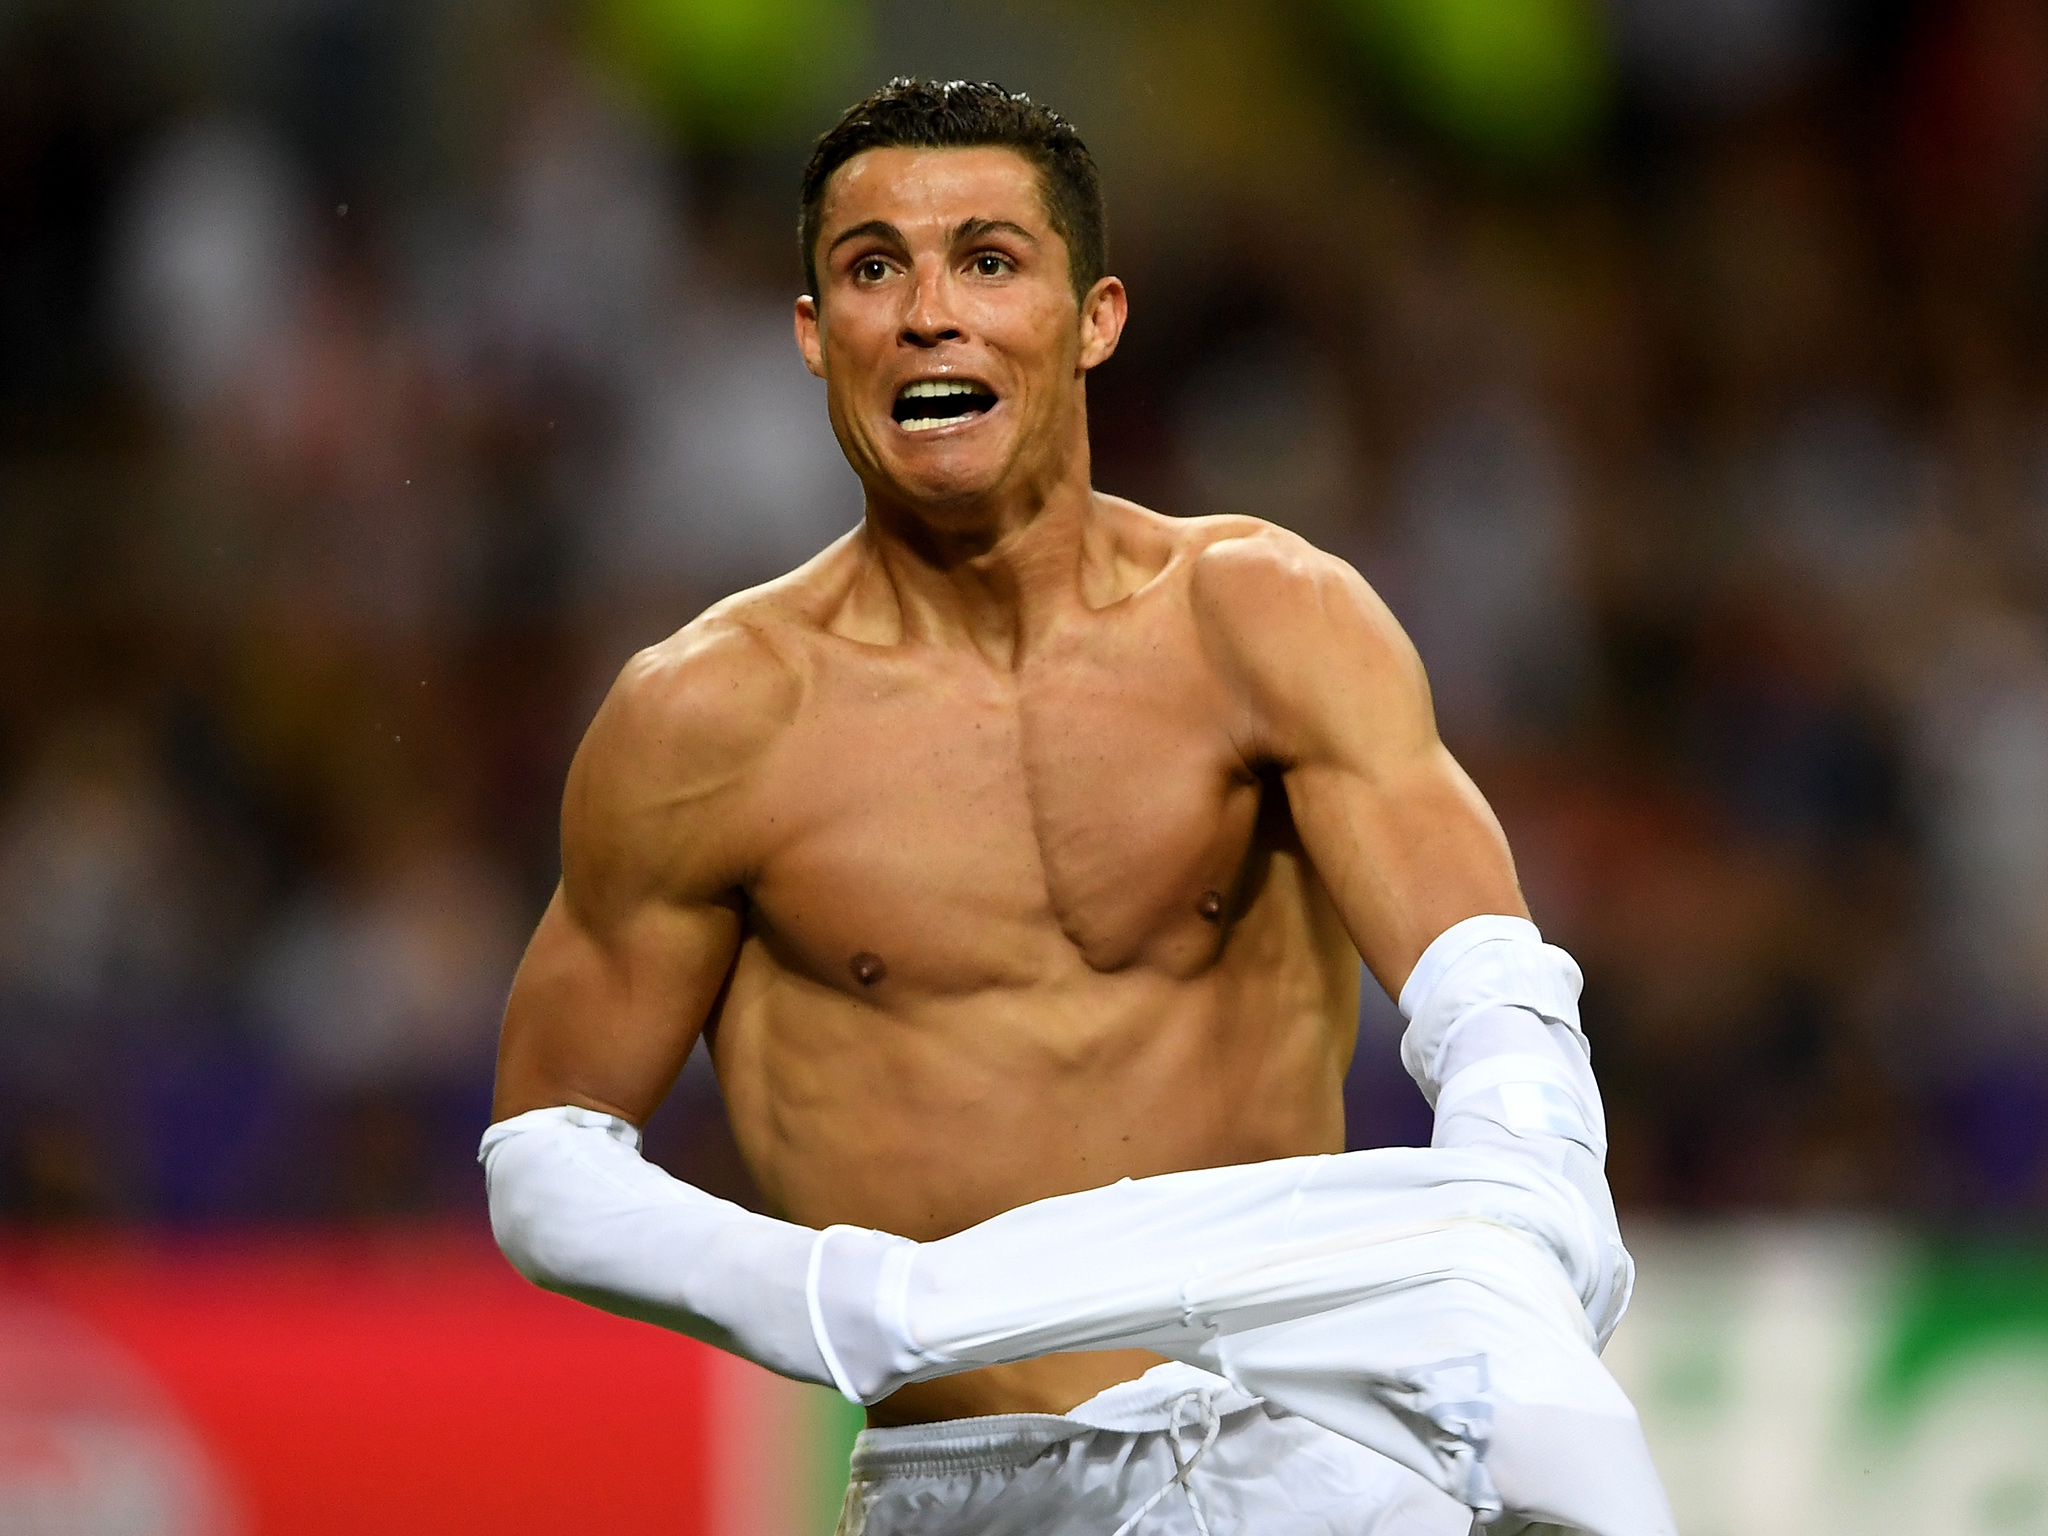 Lý do để tin Ronaldo sẽ ở lại Real: Tiền, danh vọng và Messi - Bóng Đá